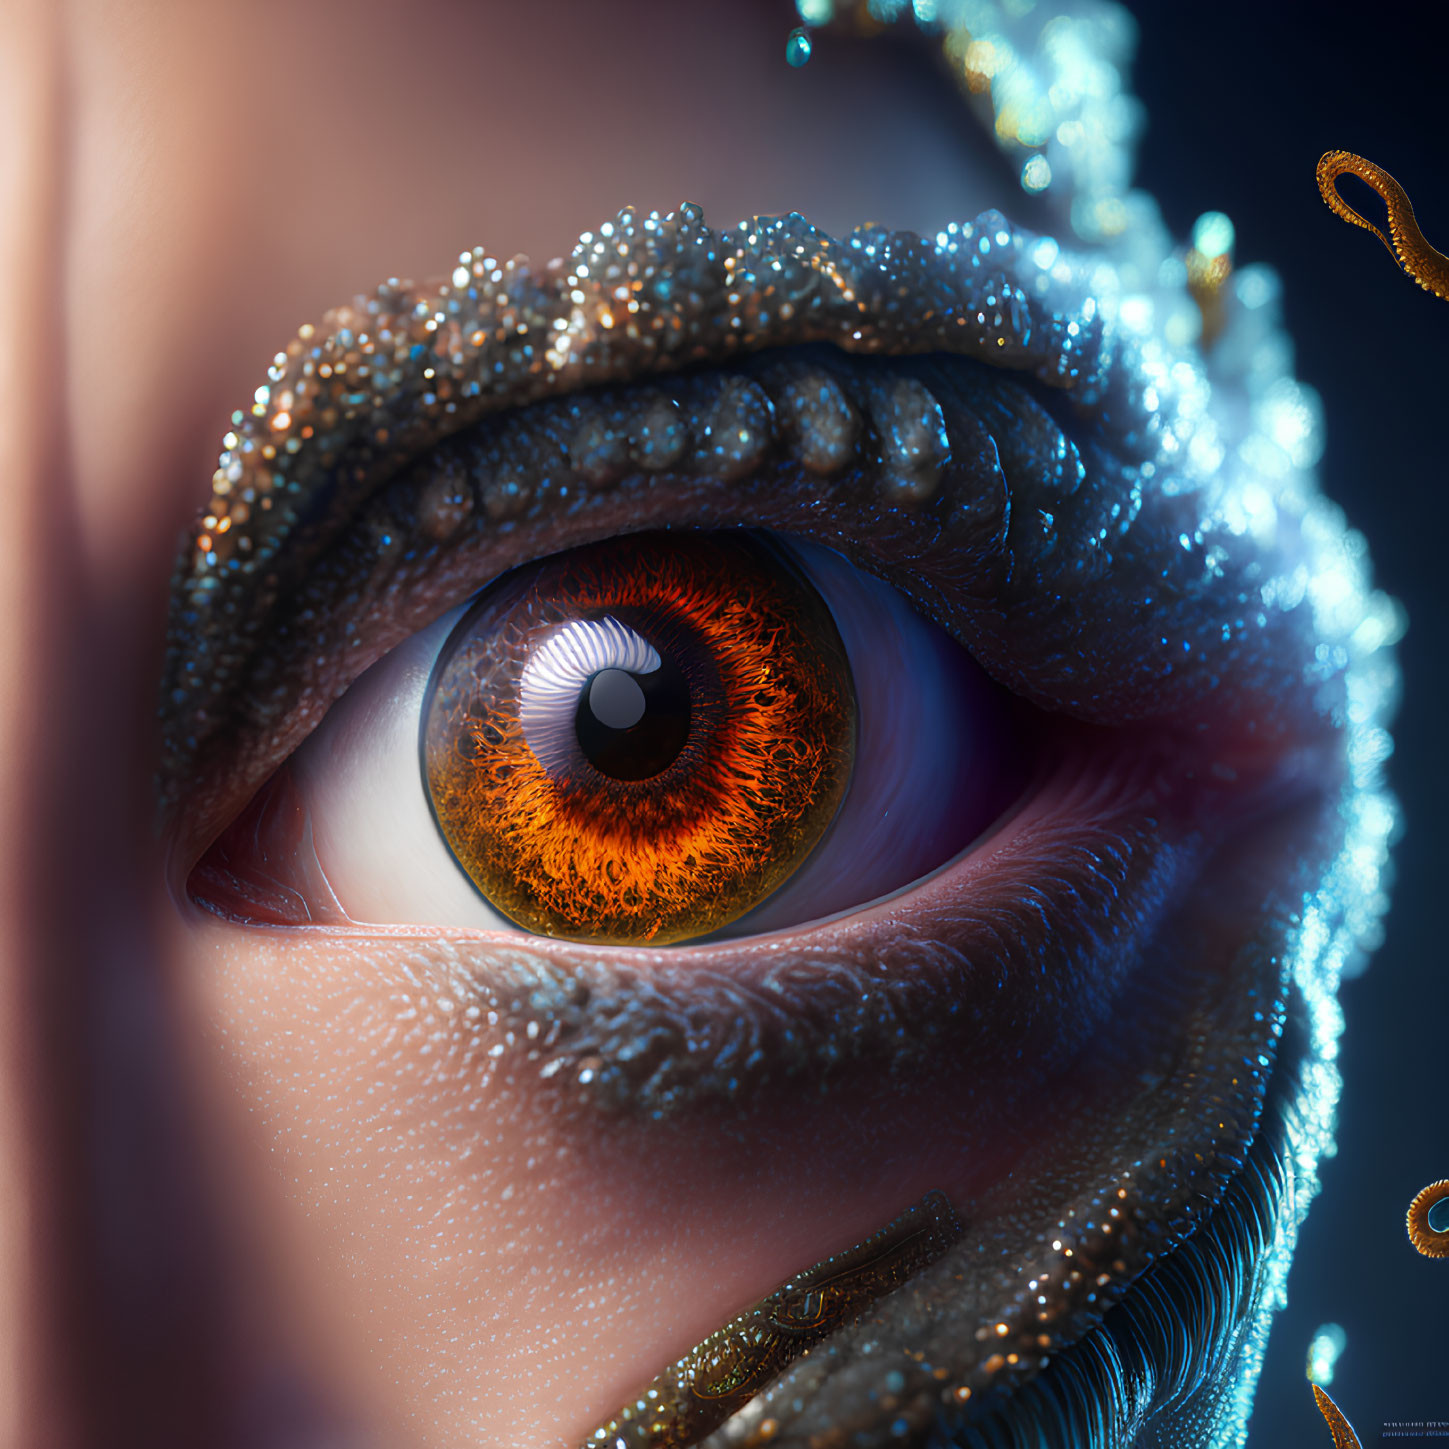 Detailed Close-Up of Orange Iris Eye with Sparkling Makeup